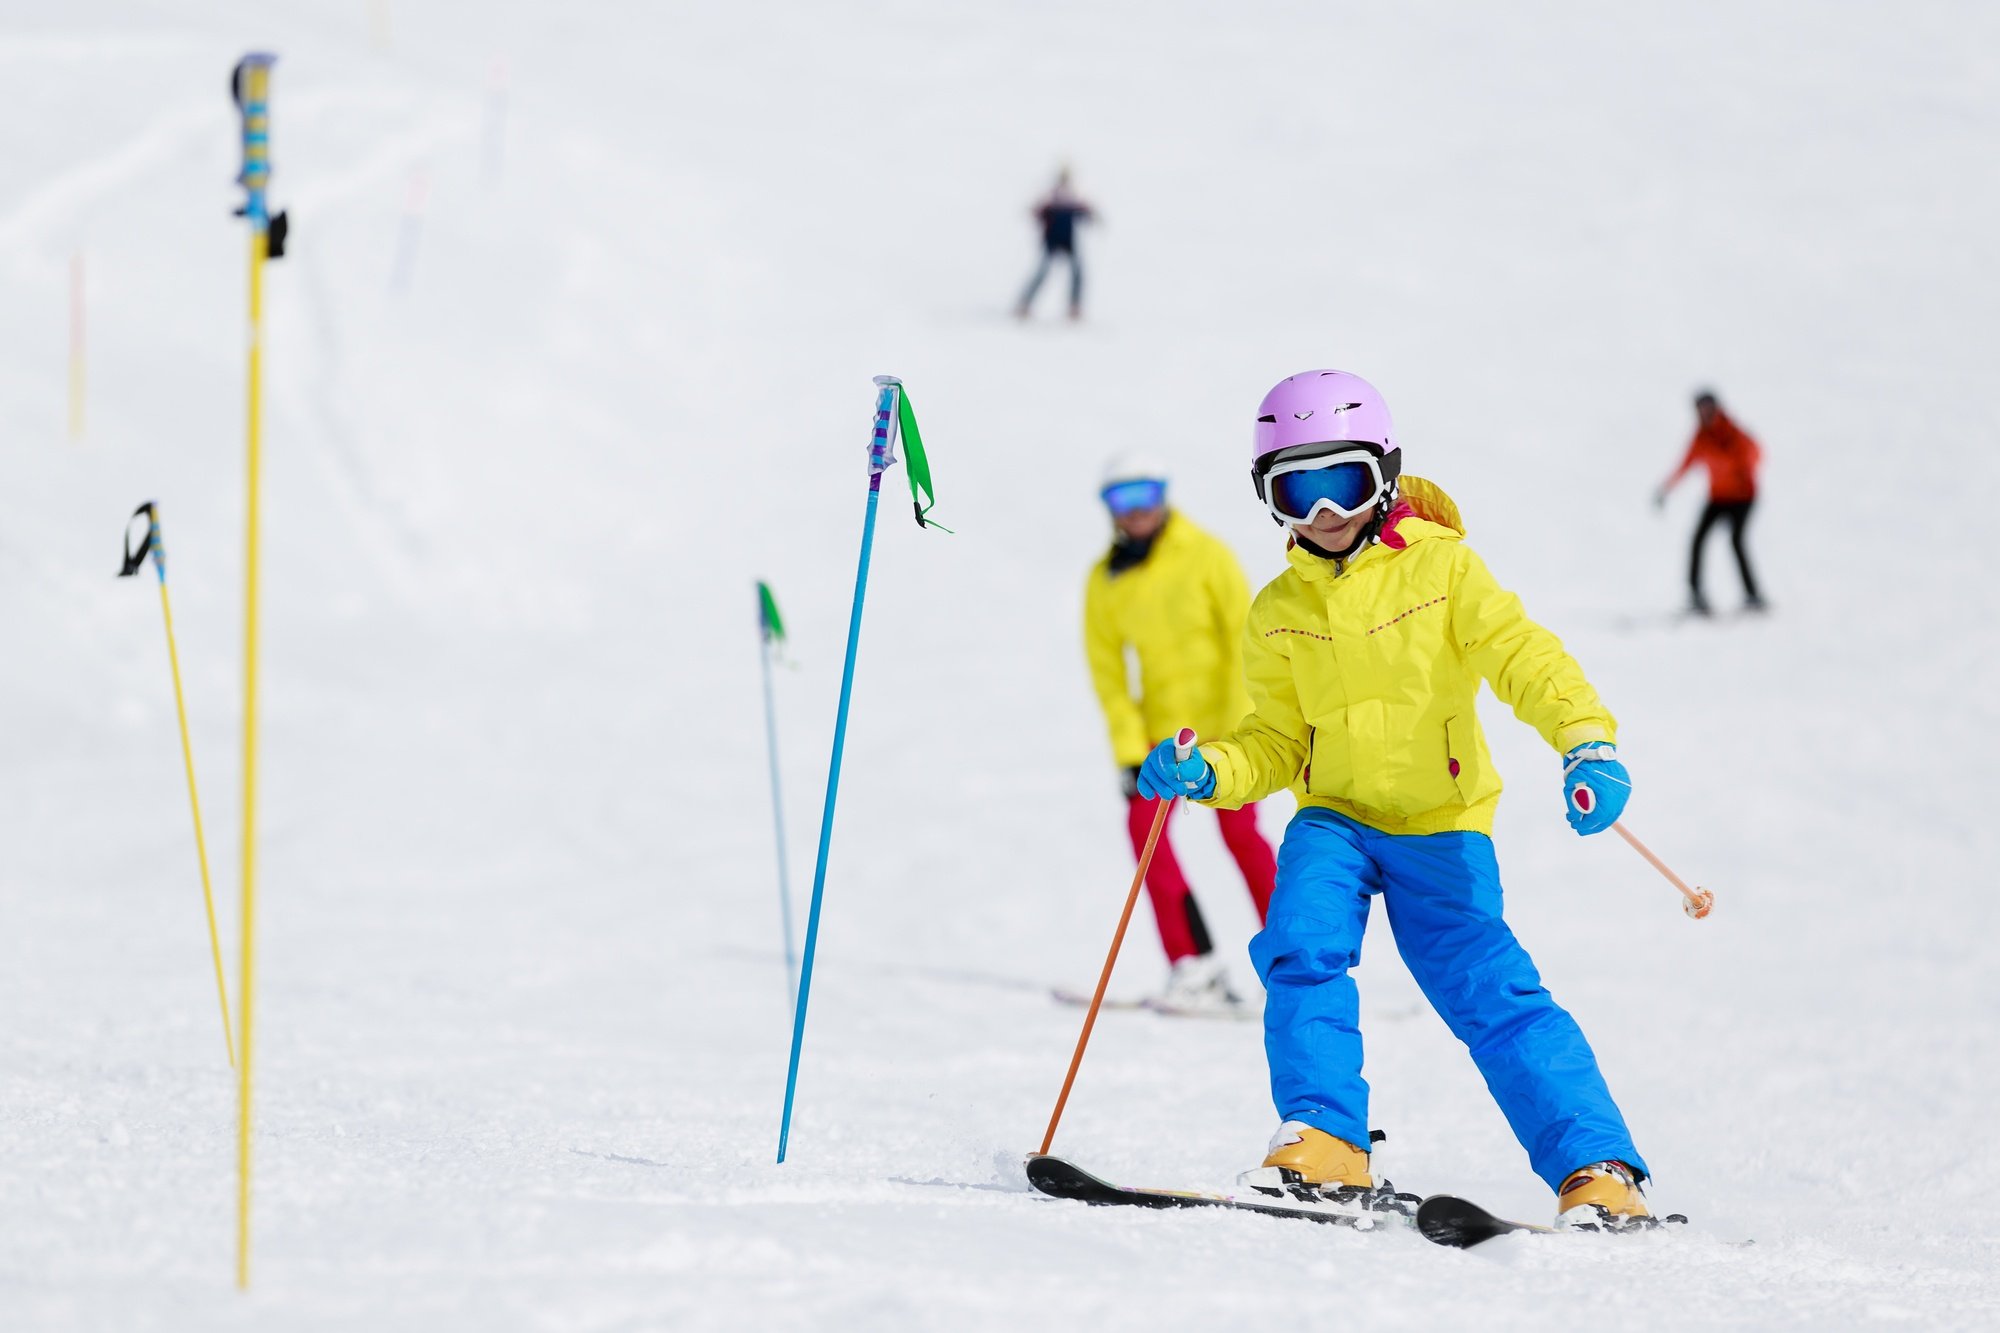 Ski lesson for kids